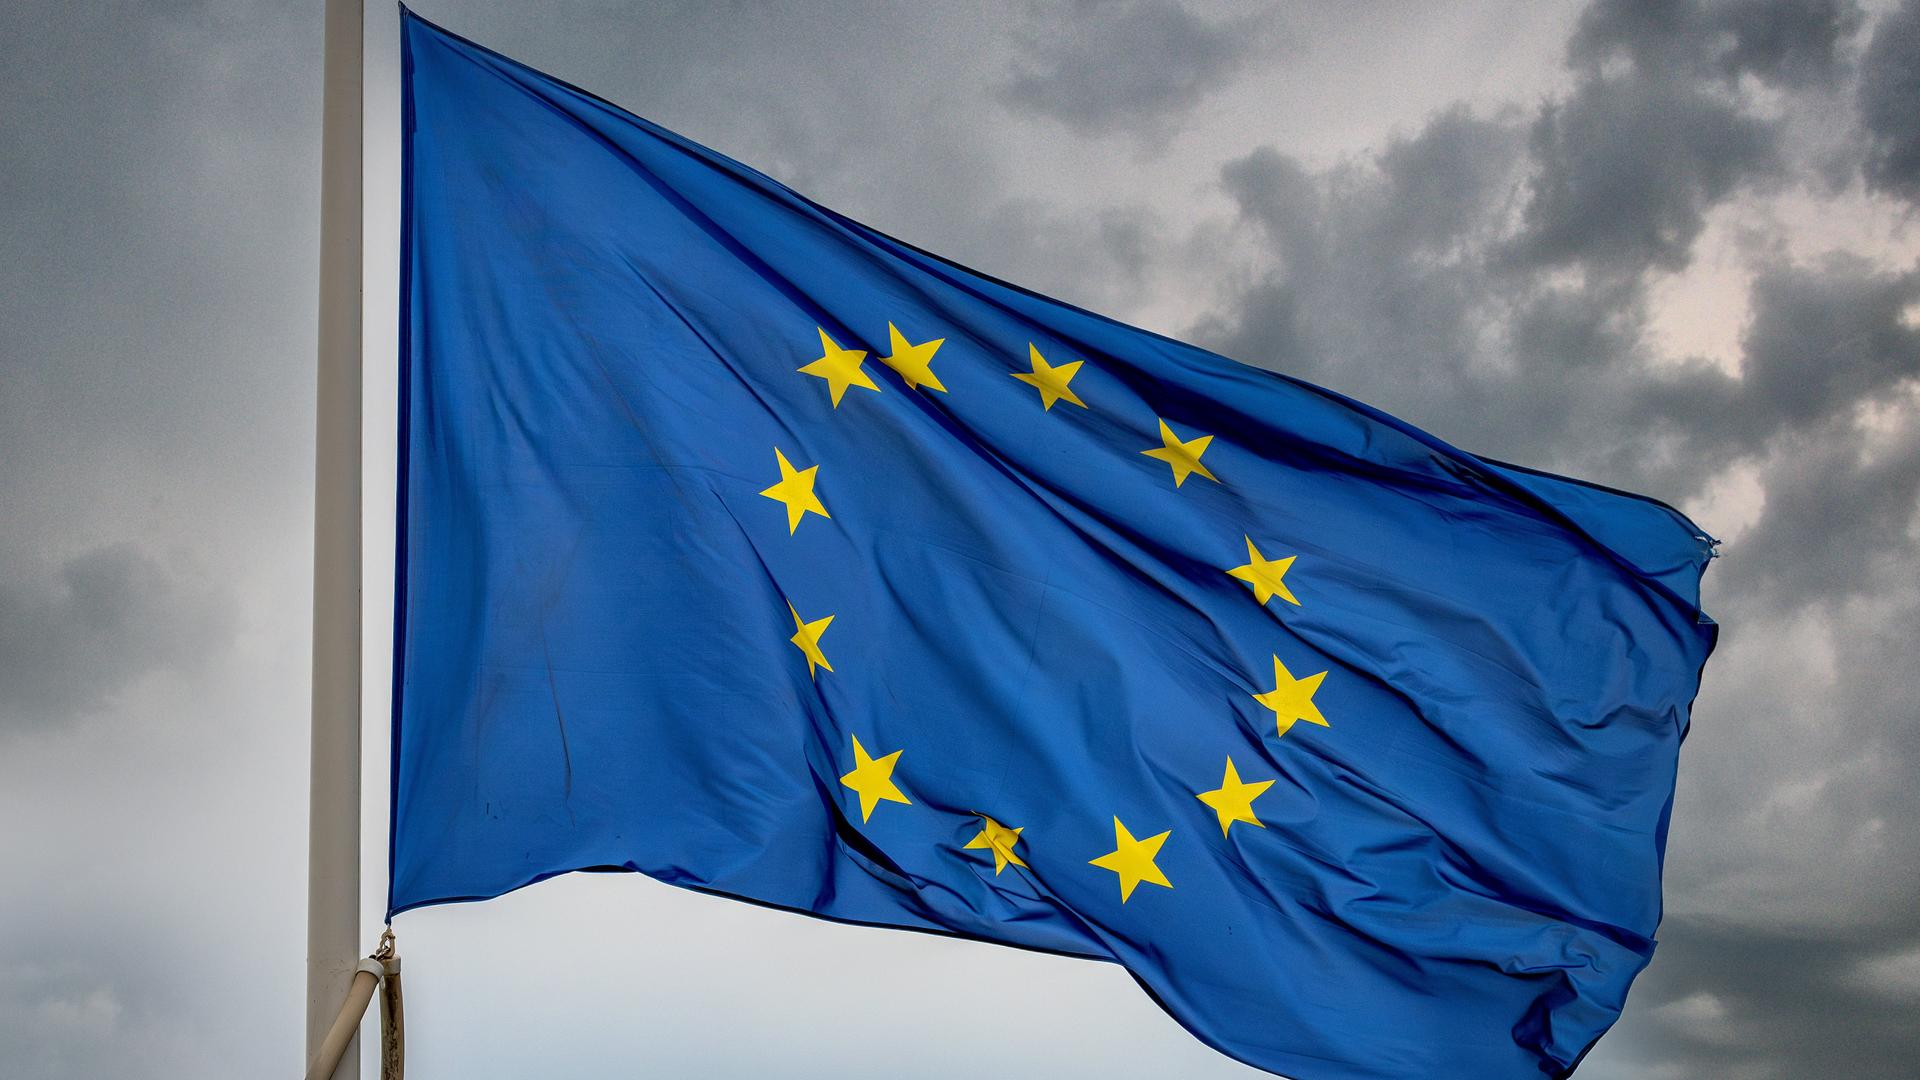 Eine Flagge der EU mit den 12 gelben Sternen auf blauem Hintergrund weht vor einem grau bewölkten Himmel.